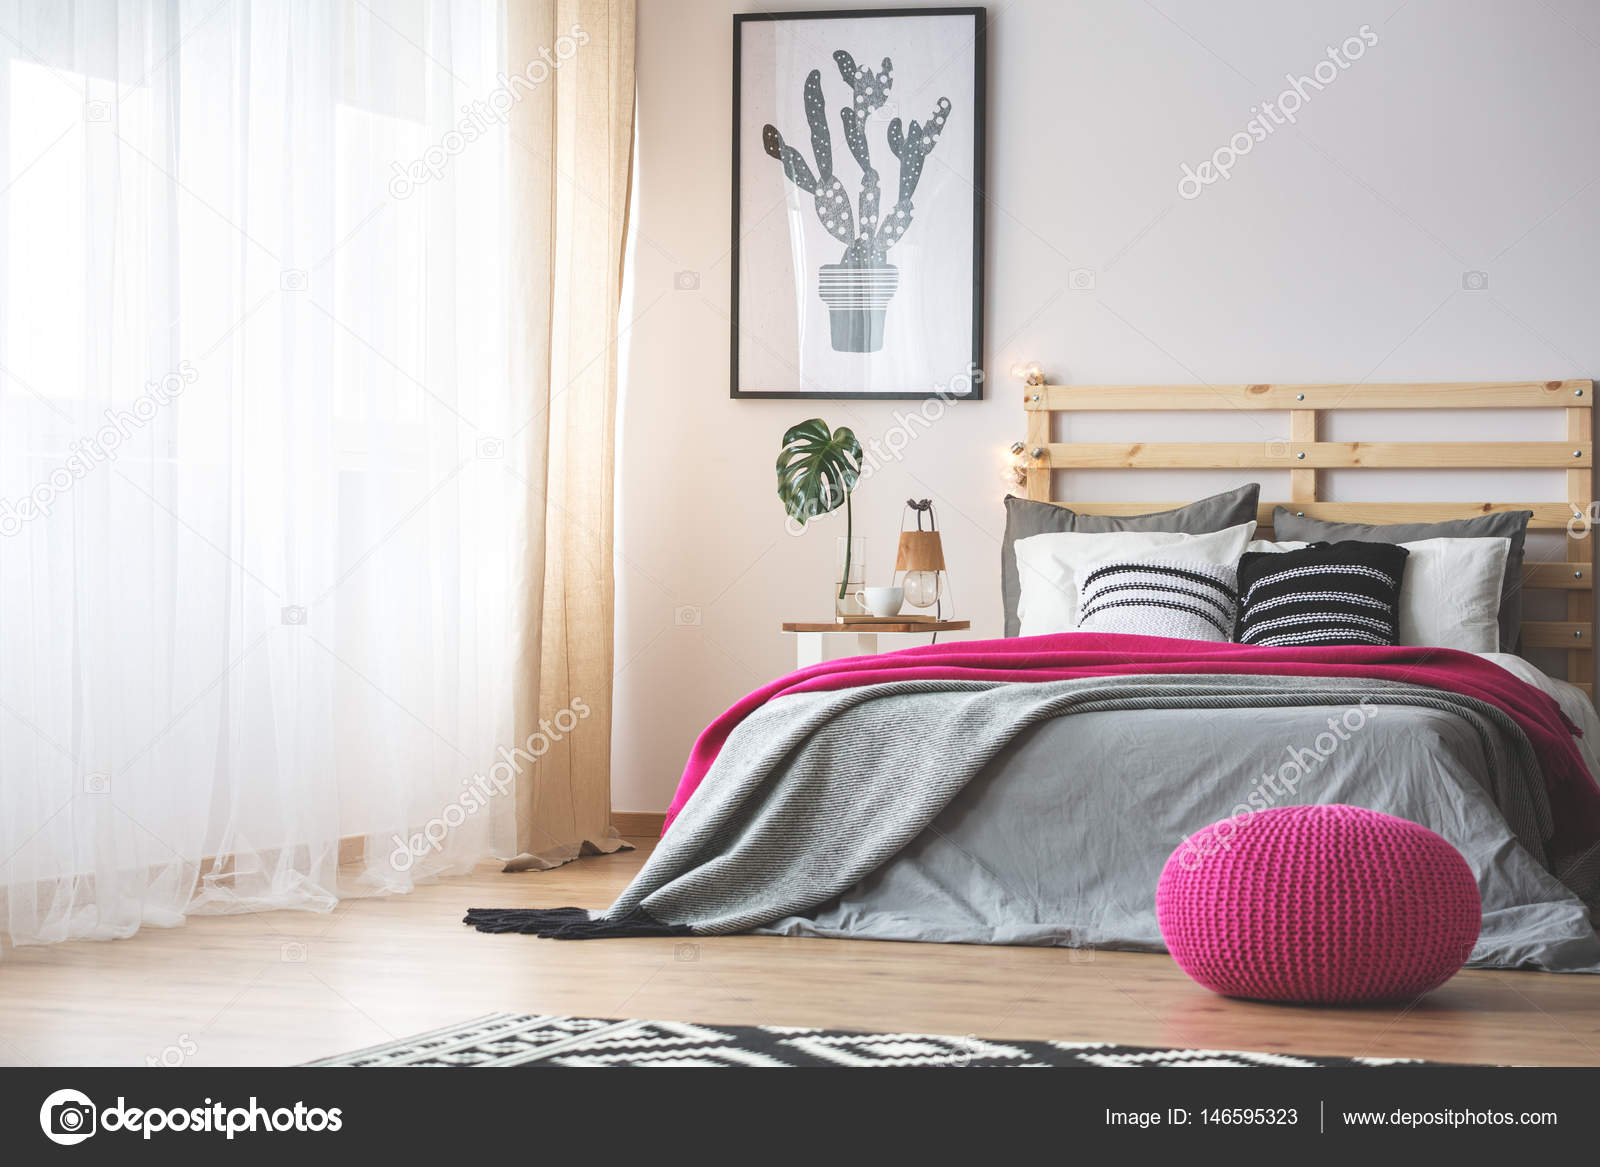 Afwezigheid Wierook Je zal beter worden Slaapkamer met roze accessoires ⬇ Stockfoto, rechtenvrije foto door ©  photographee.eu #146595323